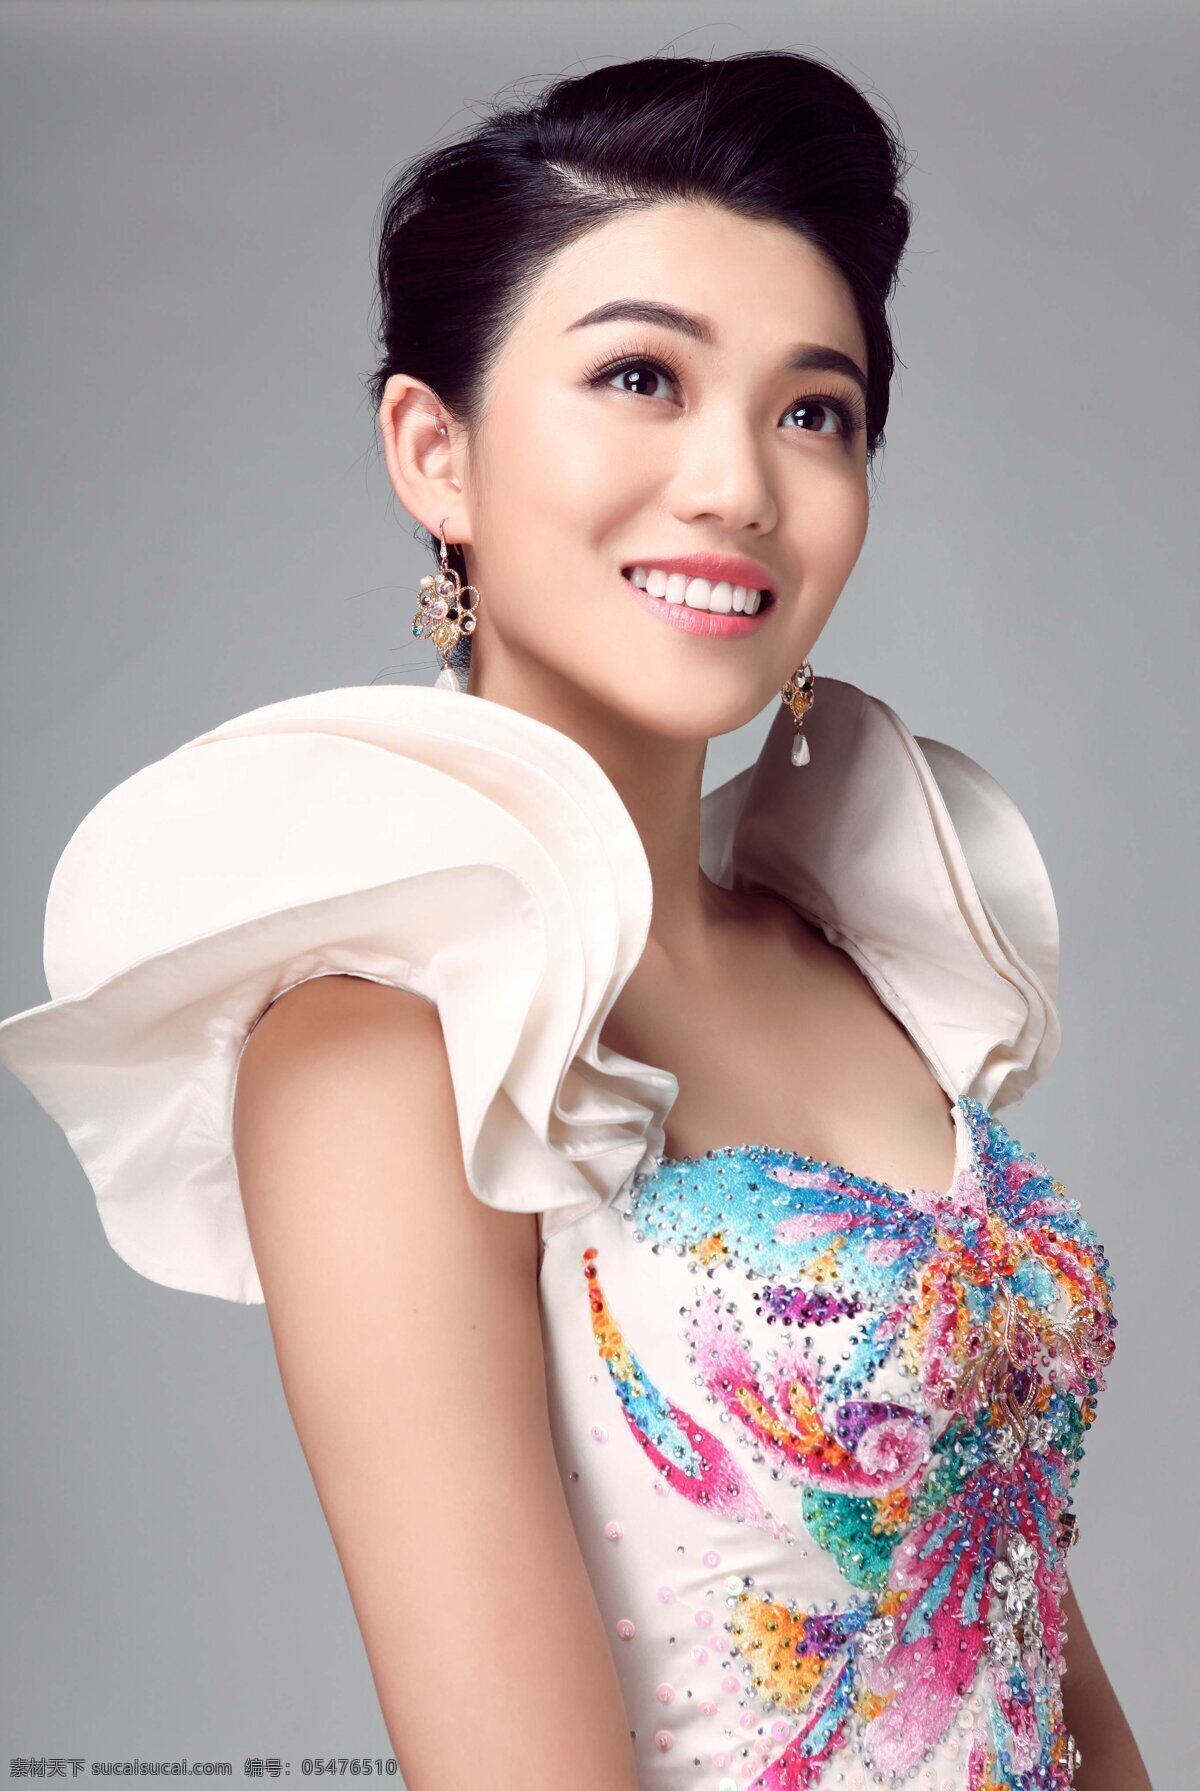 魏伽妮 清纯 美女 中国 歌星 偶像 高清 人像 女高音 明星偶像 人物图库